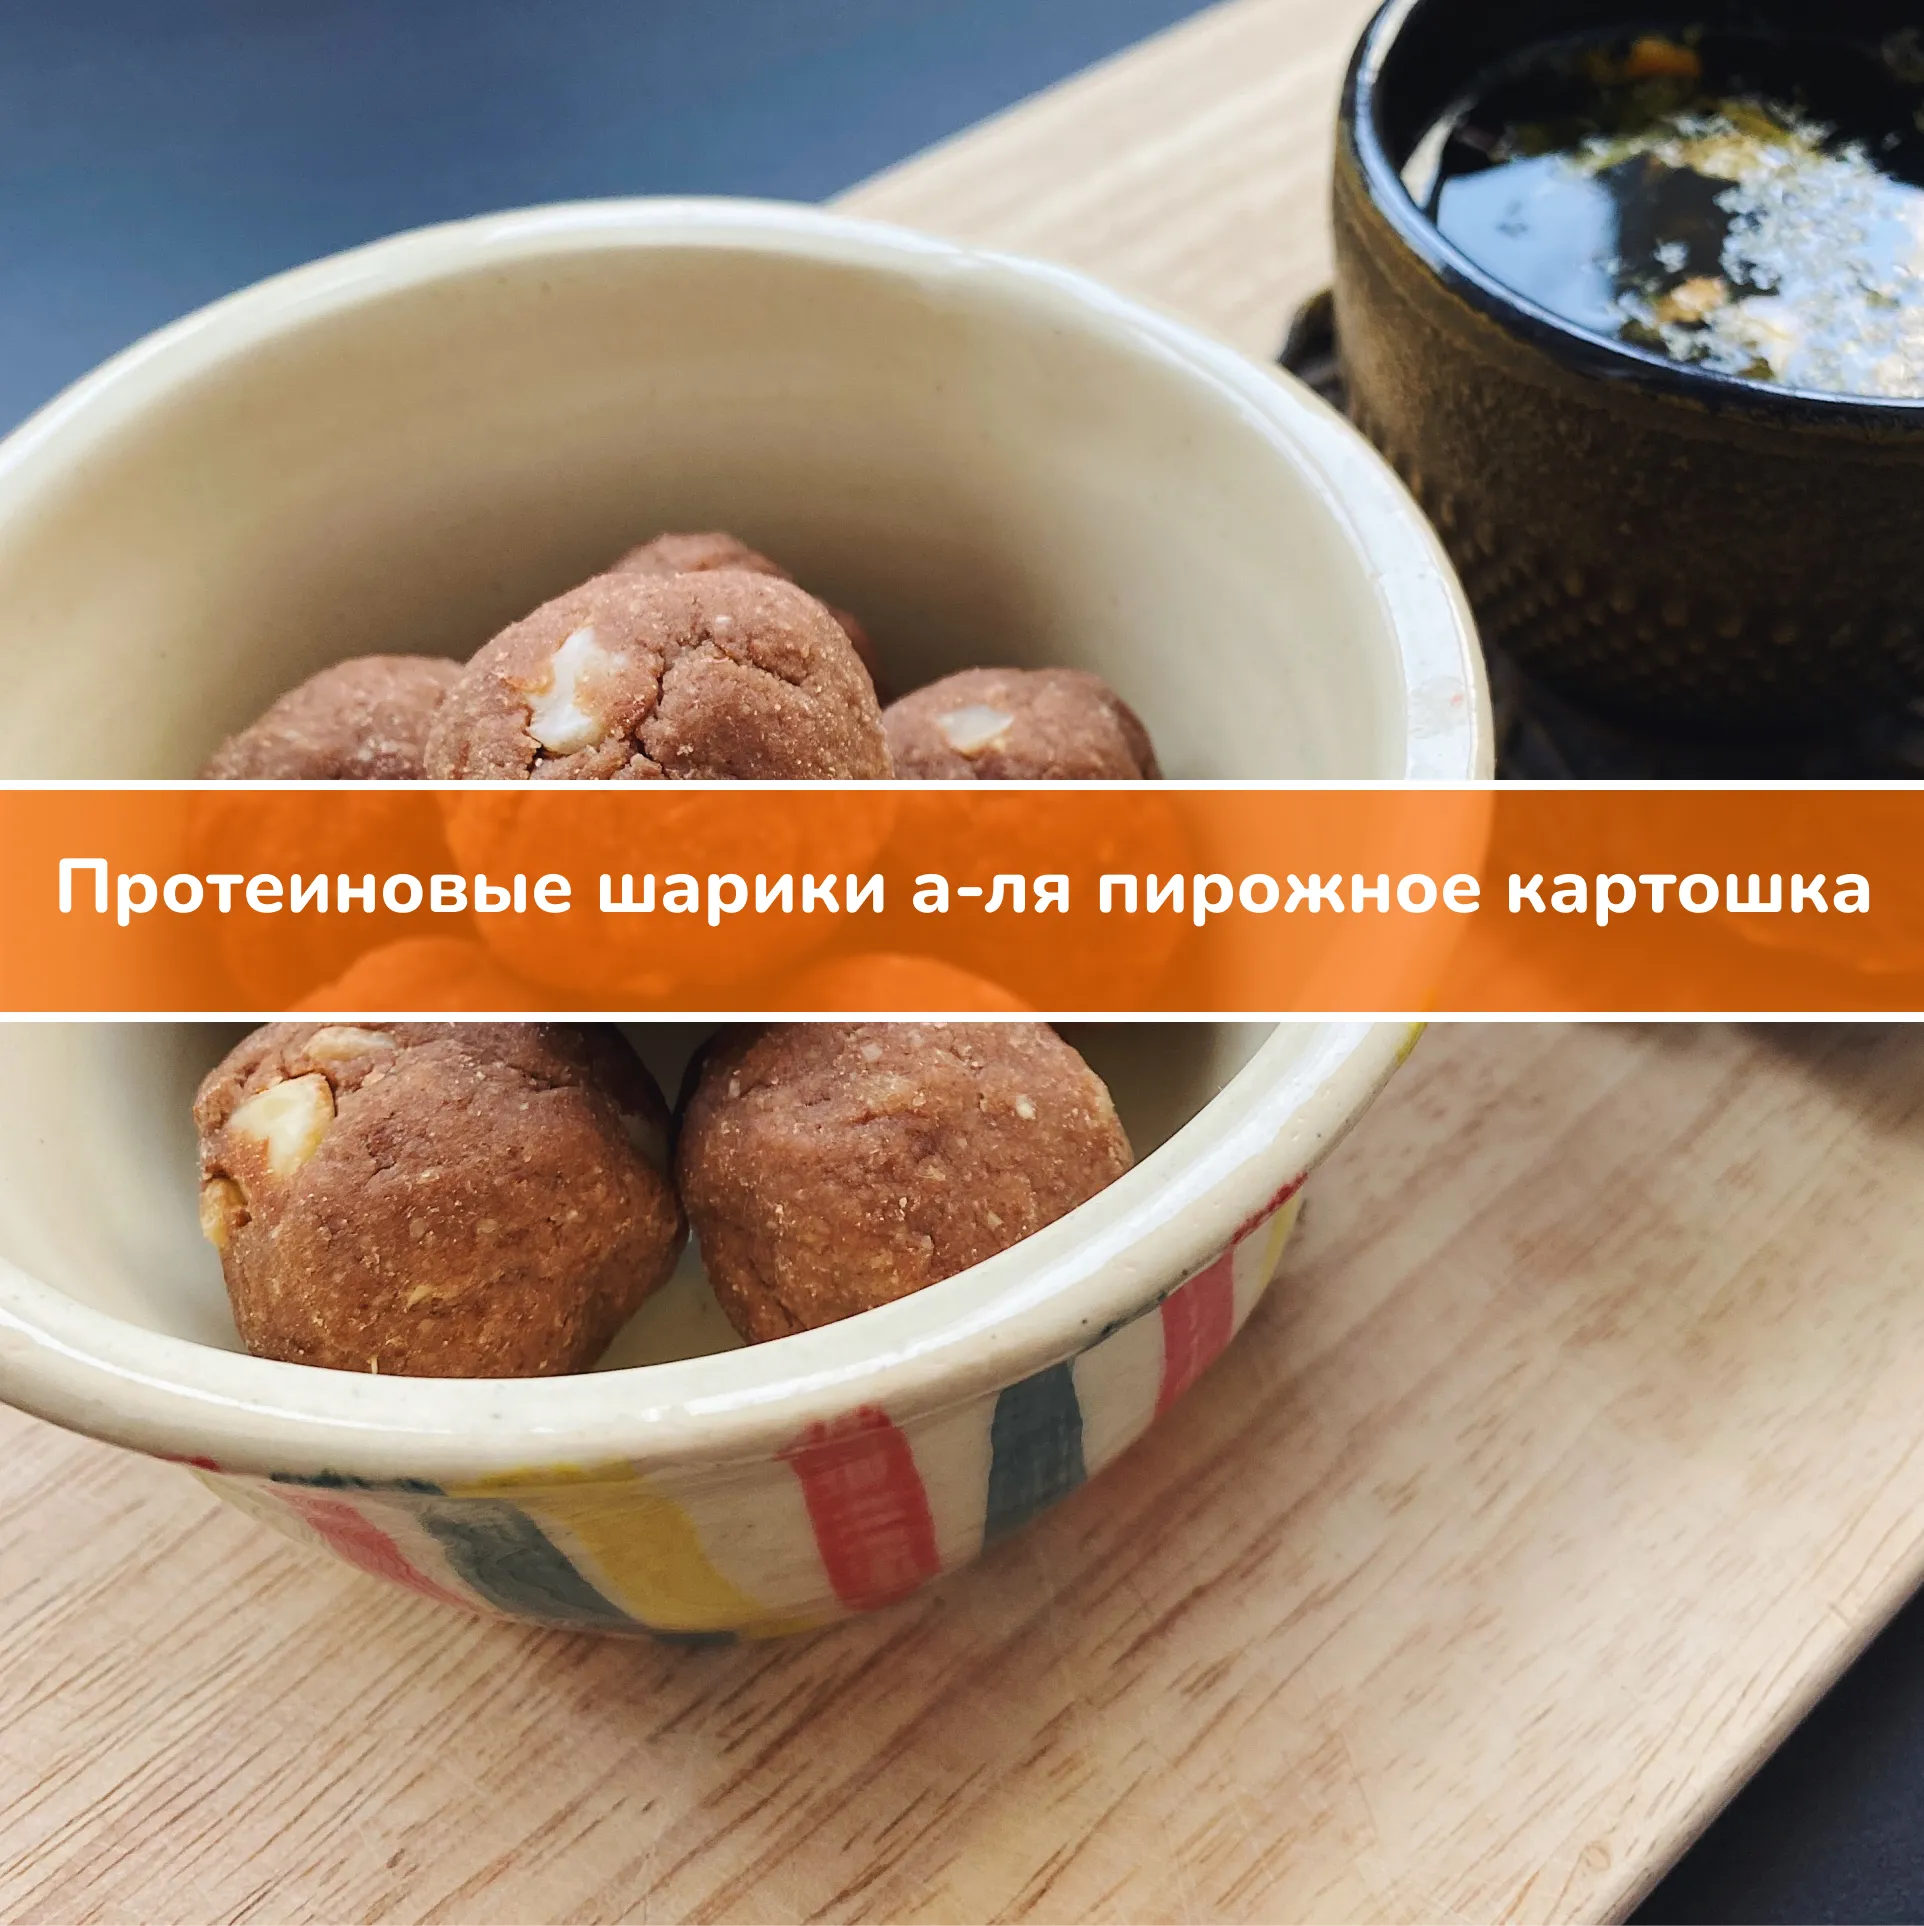 Рецепт: протеиновые шарики а-ля пирожное картошка